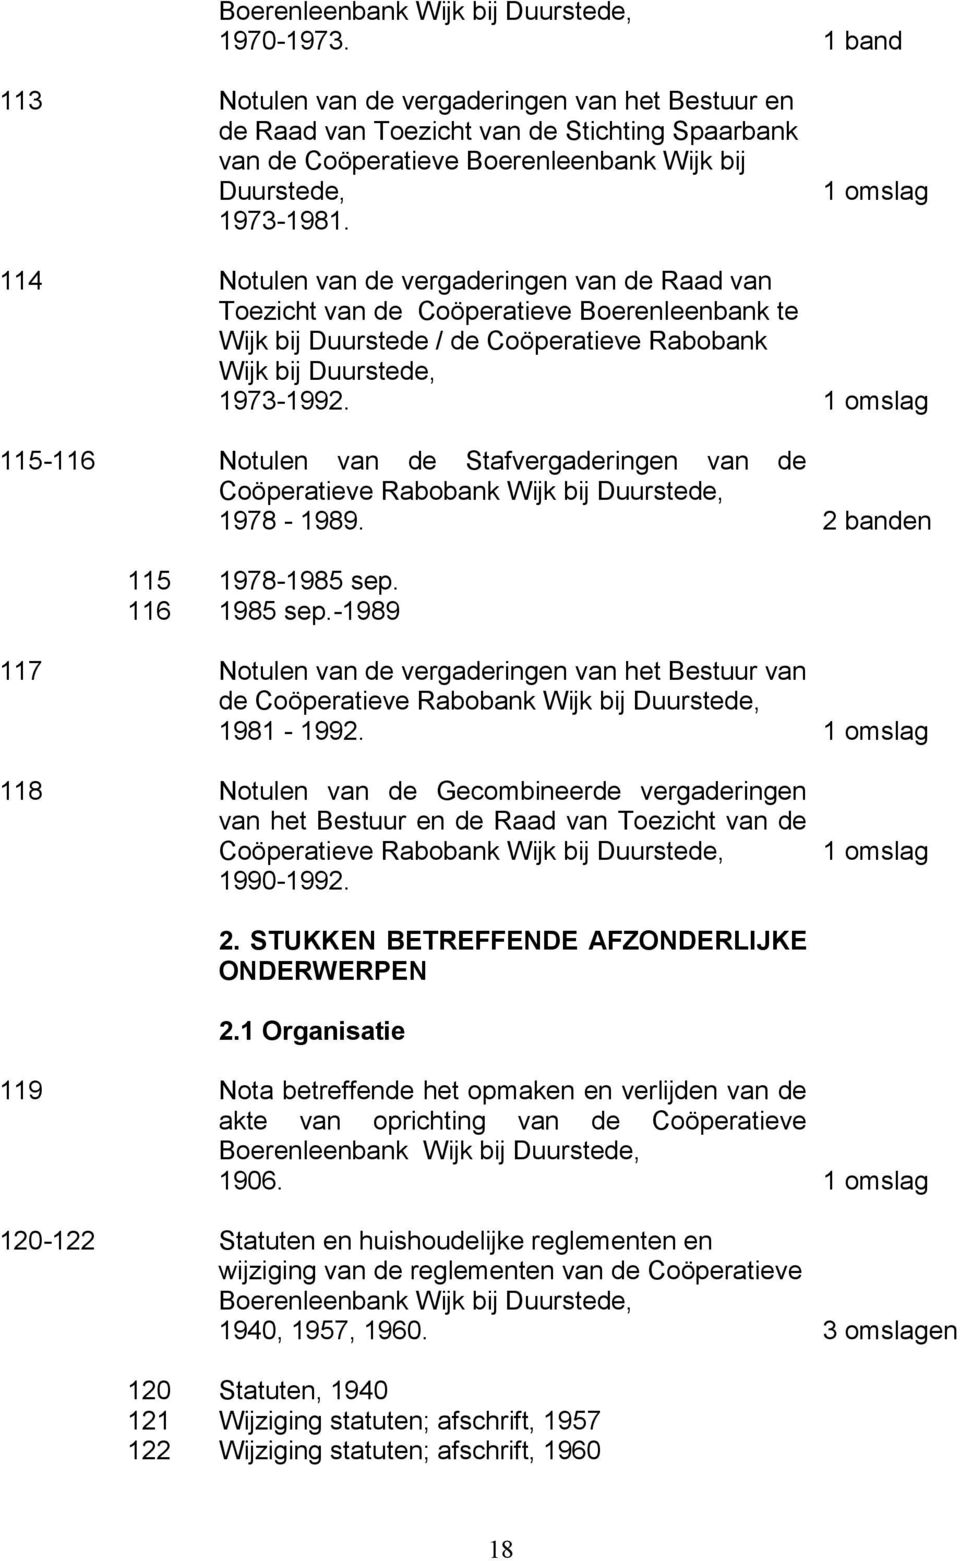 114 Notulen van de vergaderingen van de Raad van Toezicht van de Coöperatieve Boerenleenbank te Wijk bij Duurstede / de Coöperatieve Rabobank Wijk bij Duurstede, 1973-1992.